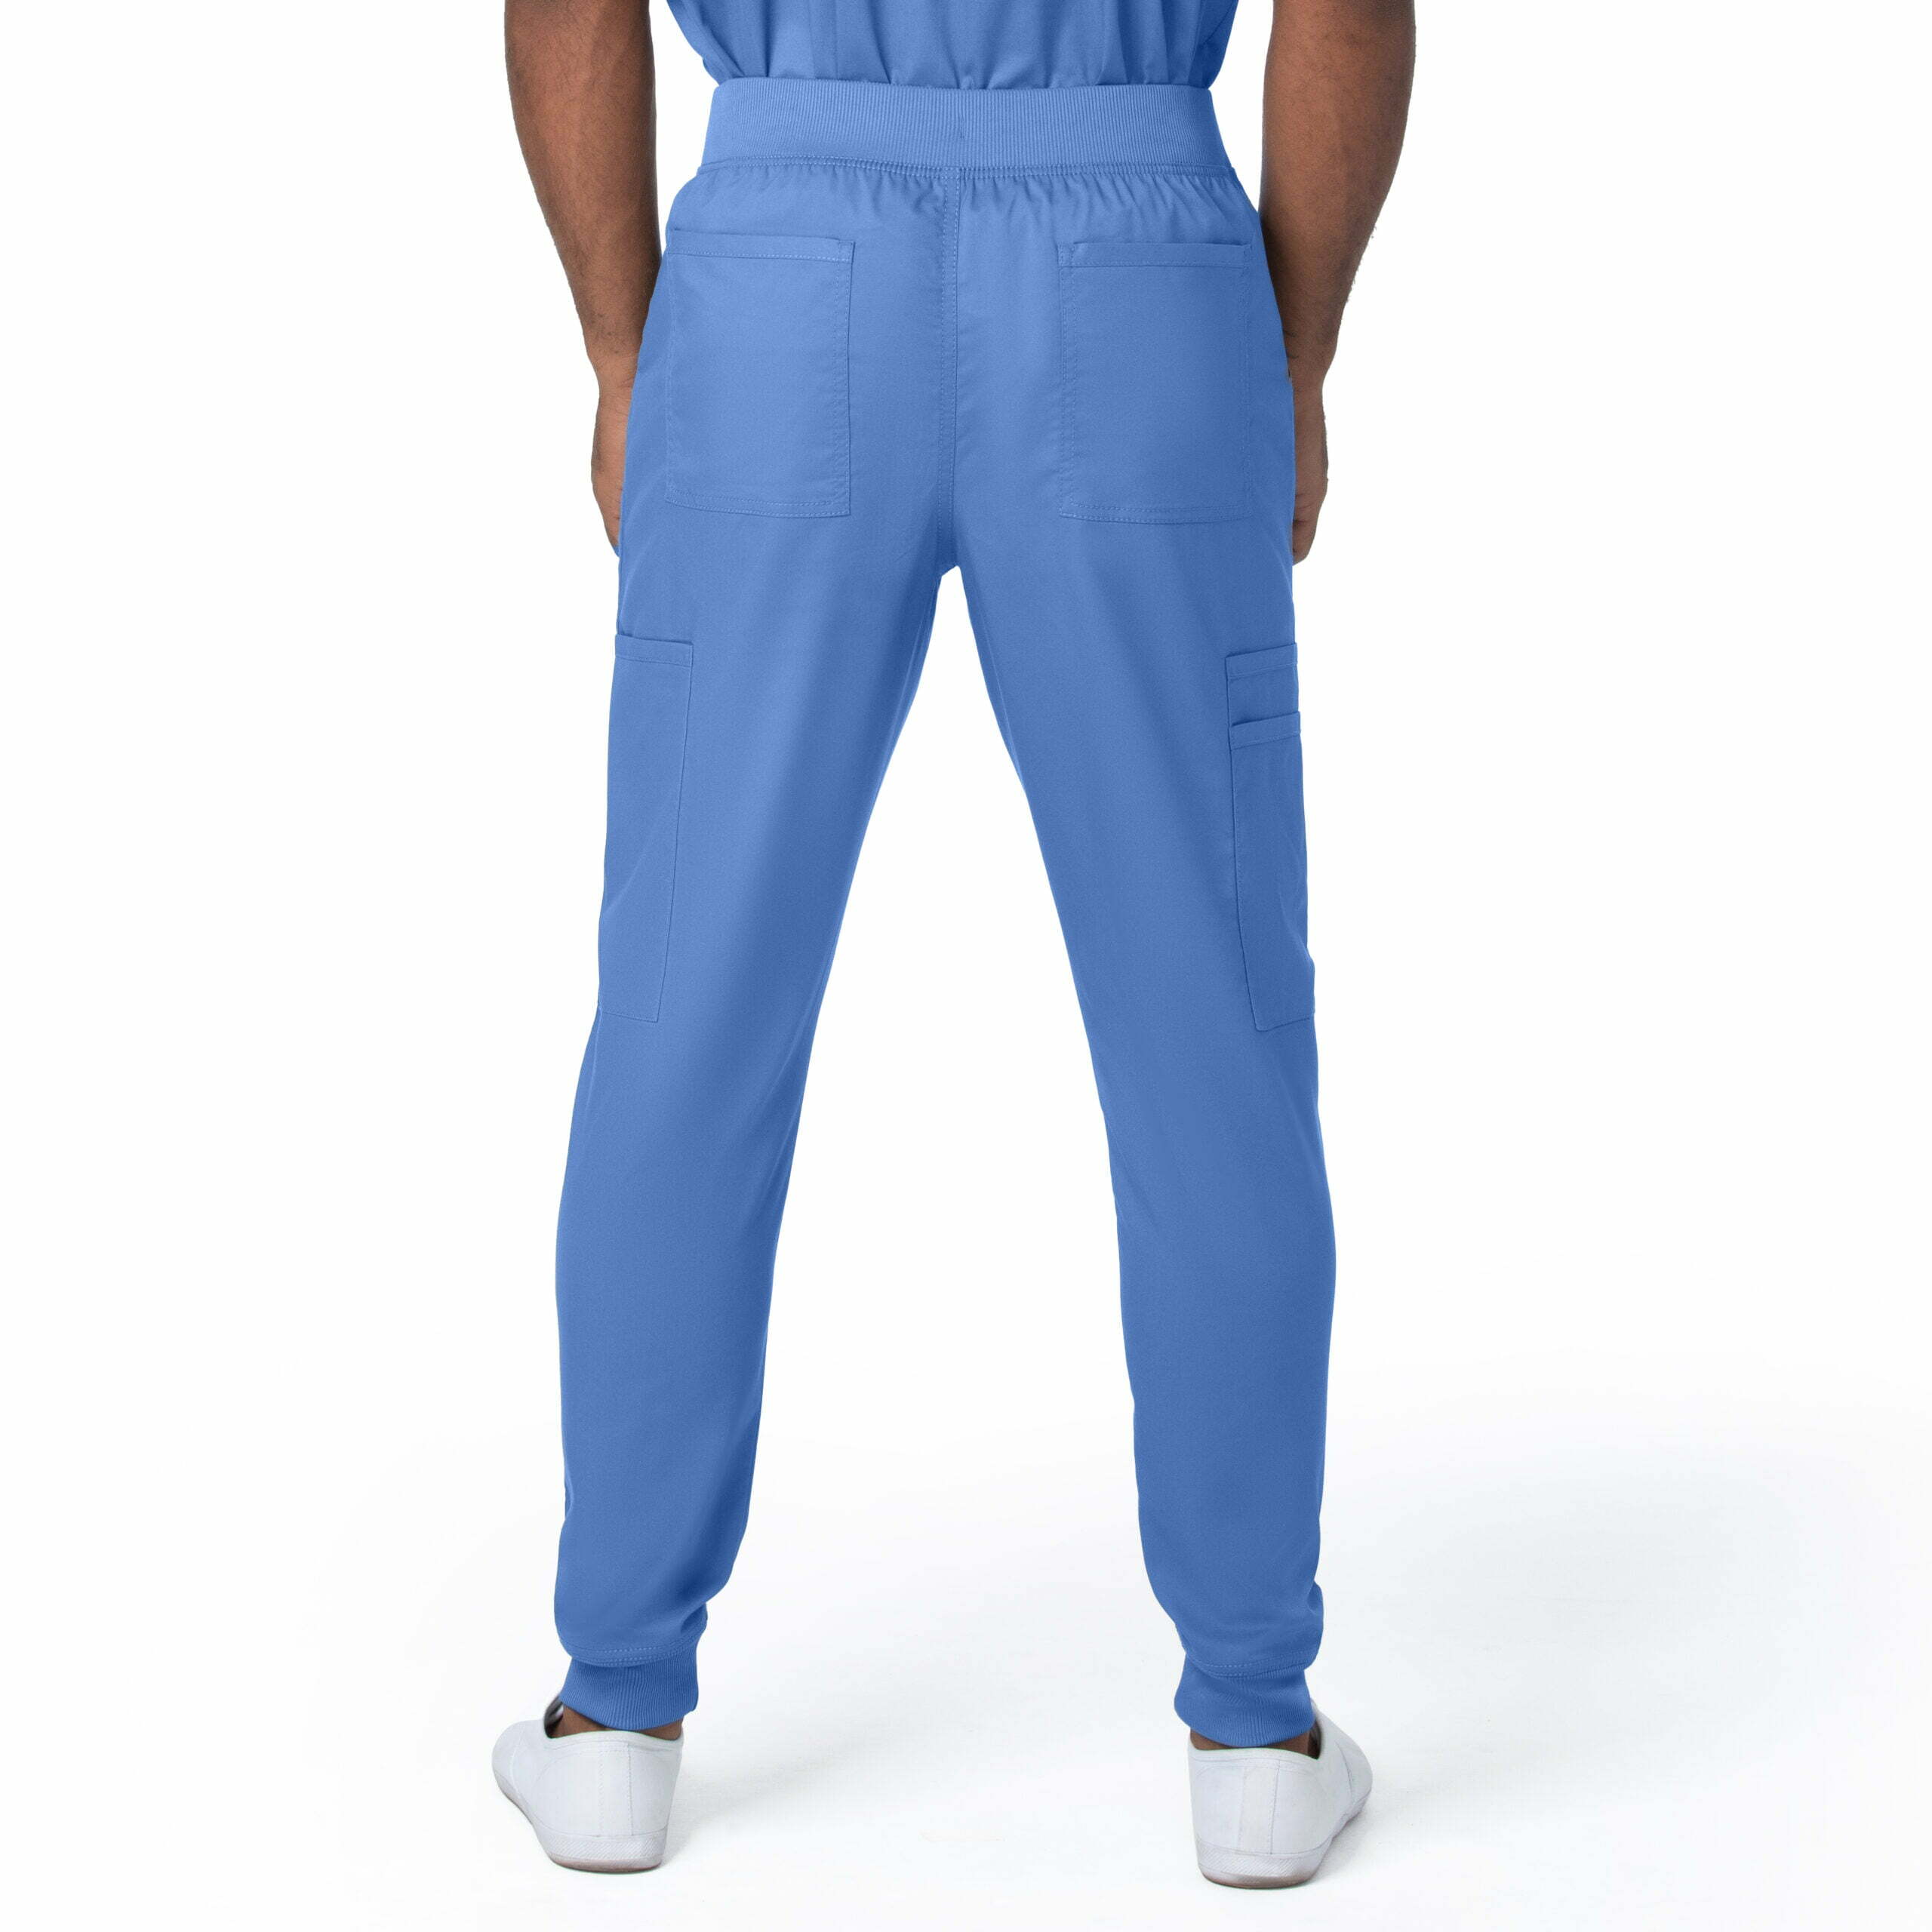 Pantalón sanitario hombre Landau azul